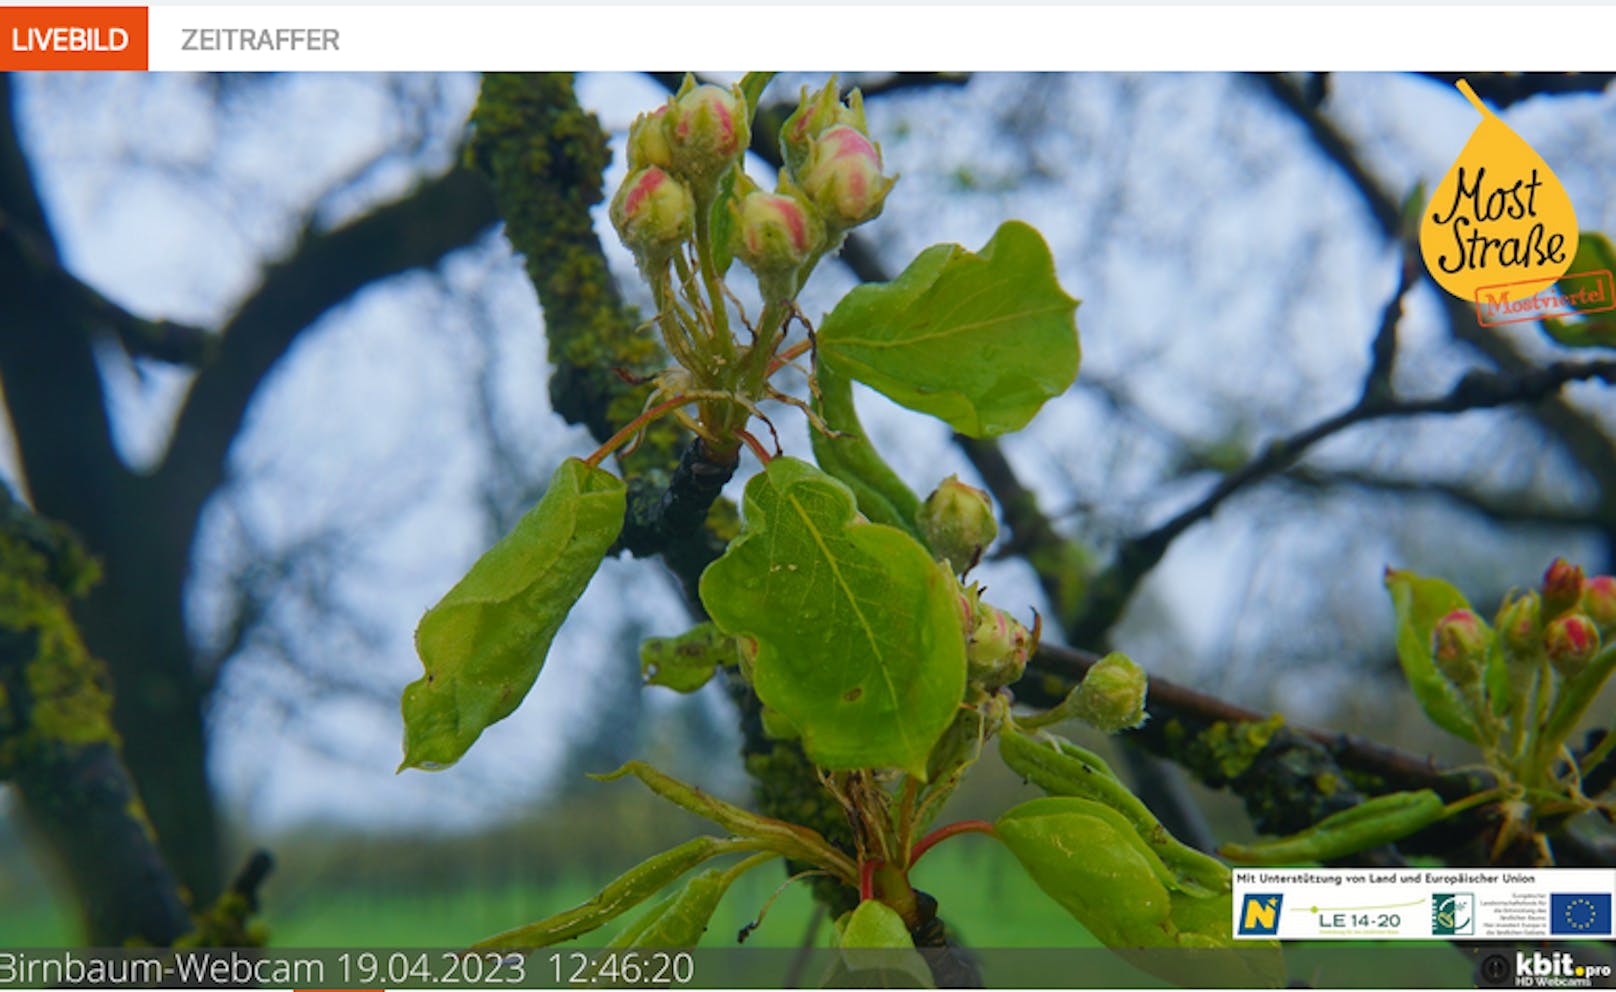 Via Webcame kann jeder die Birnenblüte verfolgen....leider crashten Pornos das Naturschauspiel.&nbsp;